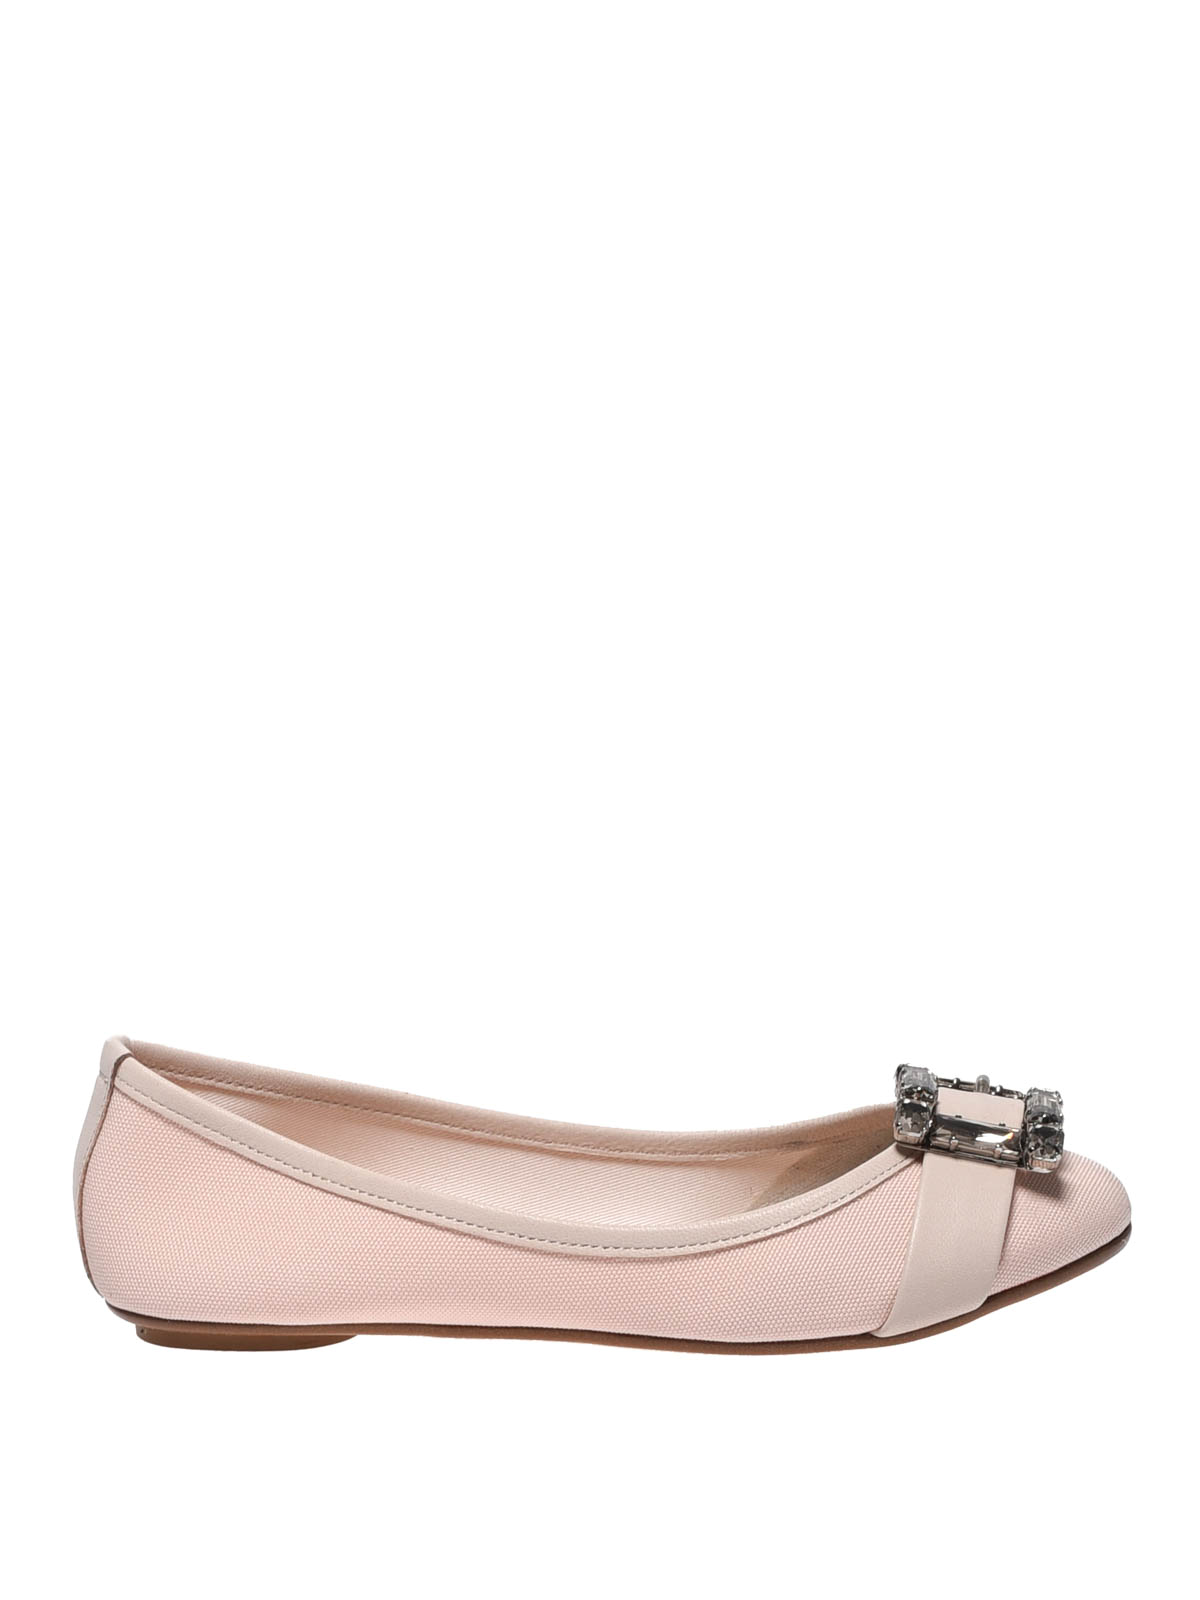 Flat shoes Anna Baiguera - Annette Flex light pink canvas flats ...